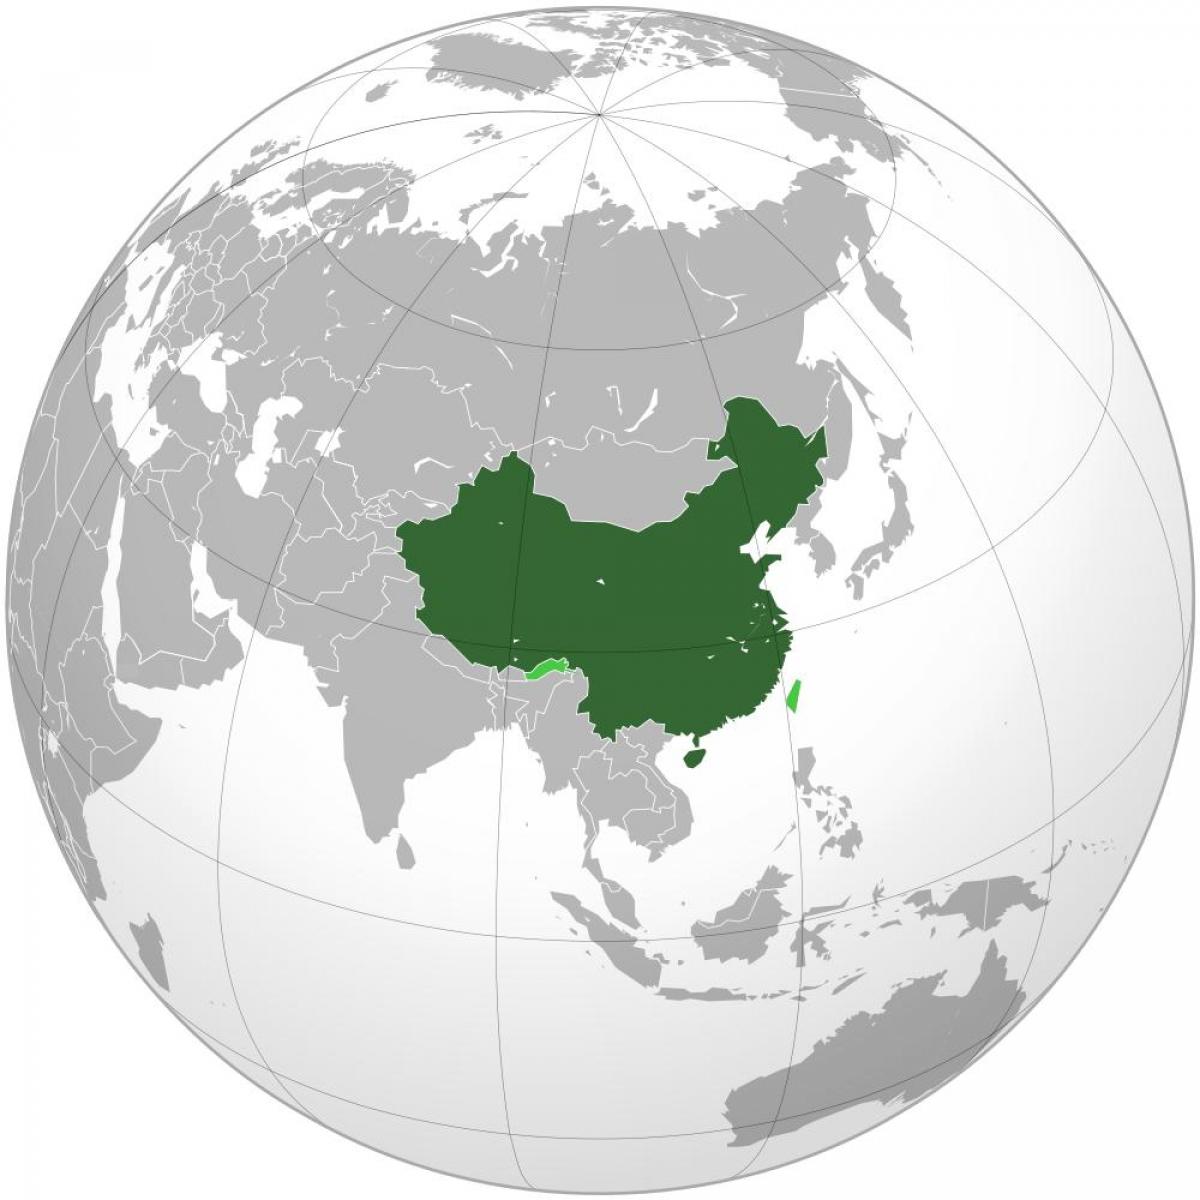 Kina karta världen